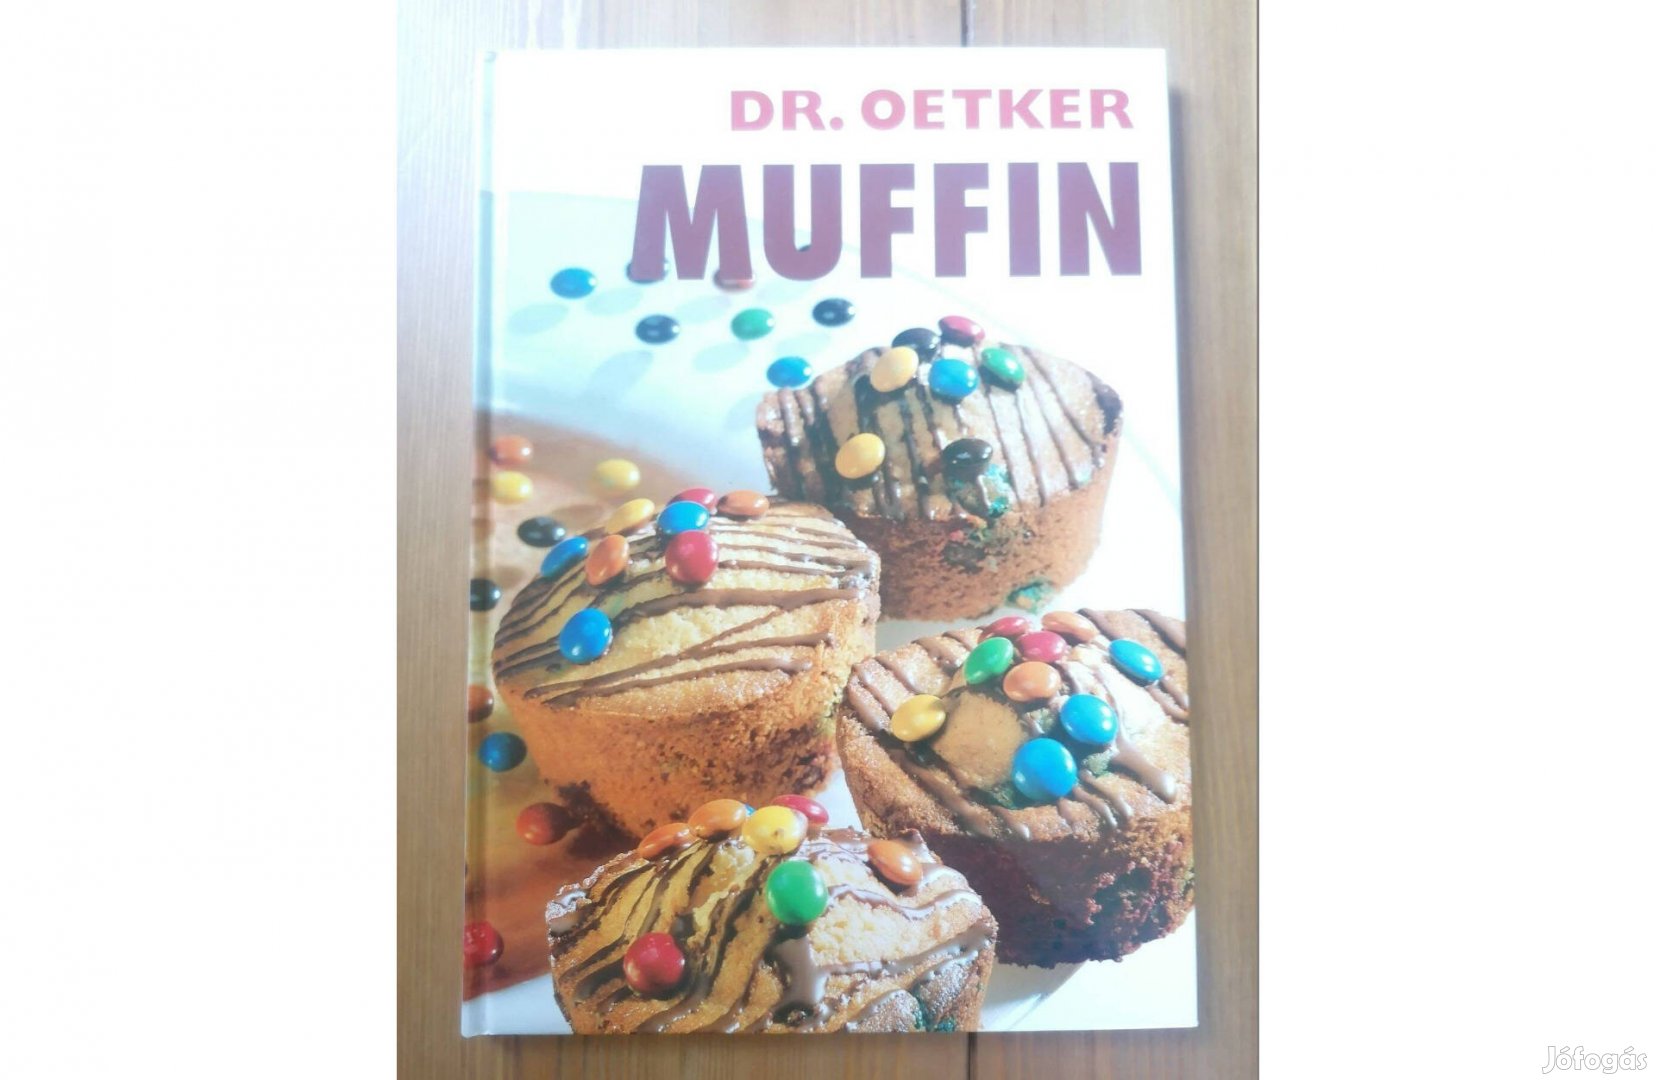 Dr. Otker: Muffin című szakácskönyv eladó!